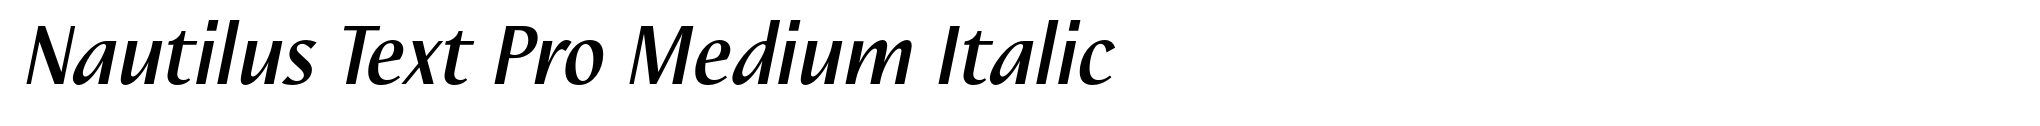 Nautilus Text Pro Medium Italic image